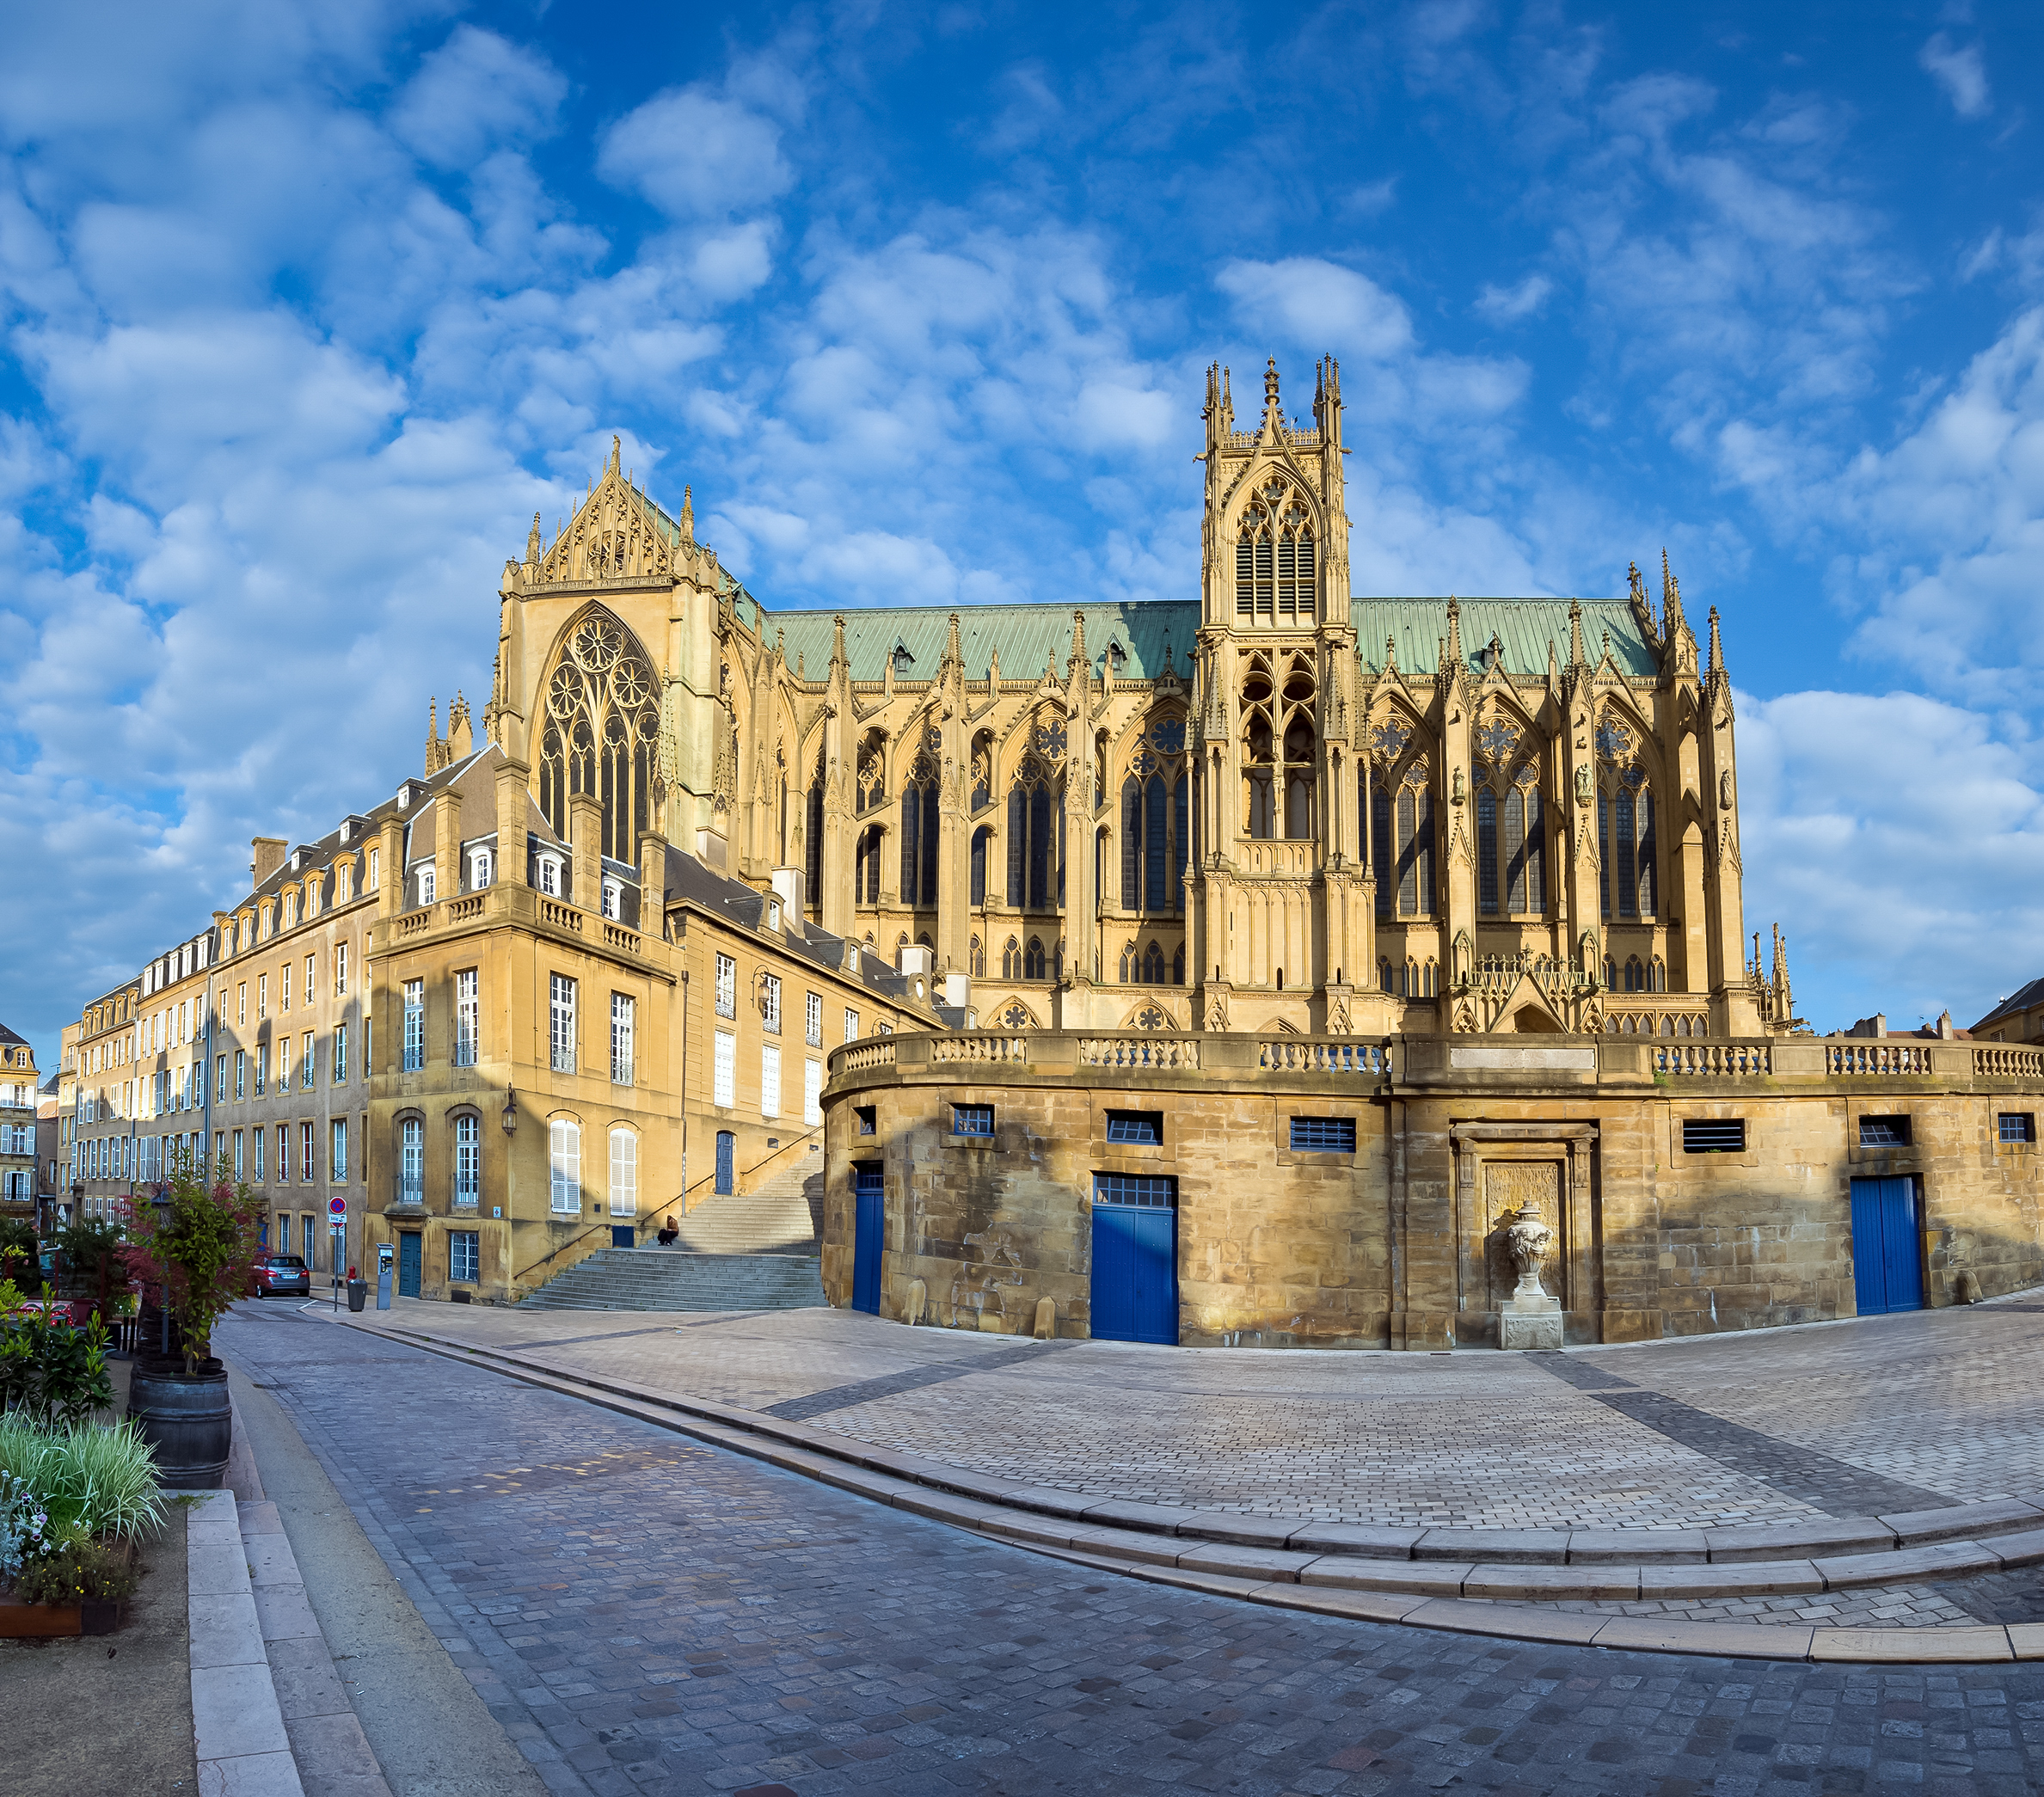 Đánh giá về địa điểm tham quan ở Cathedral Saint Etienne de Metz - Vé Cathedral Saint Etienne de Metz - Giảm giá ở Cathedral Saint Etienne de Metz - giao thông